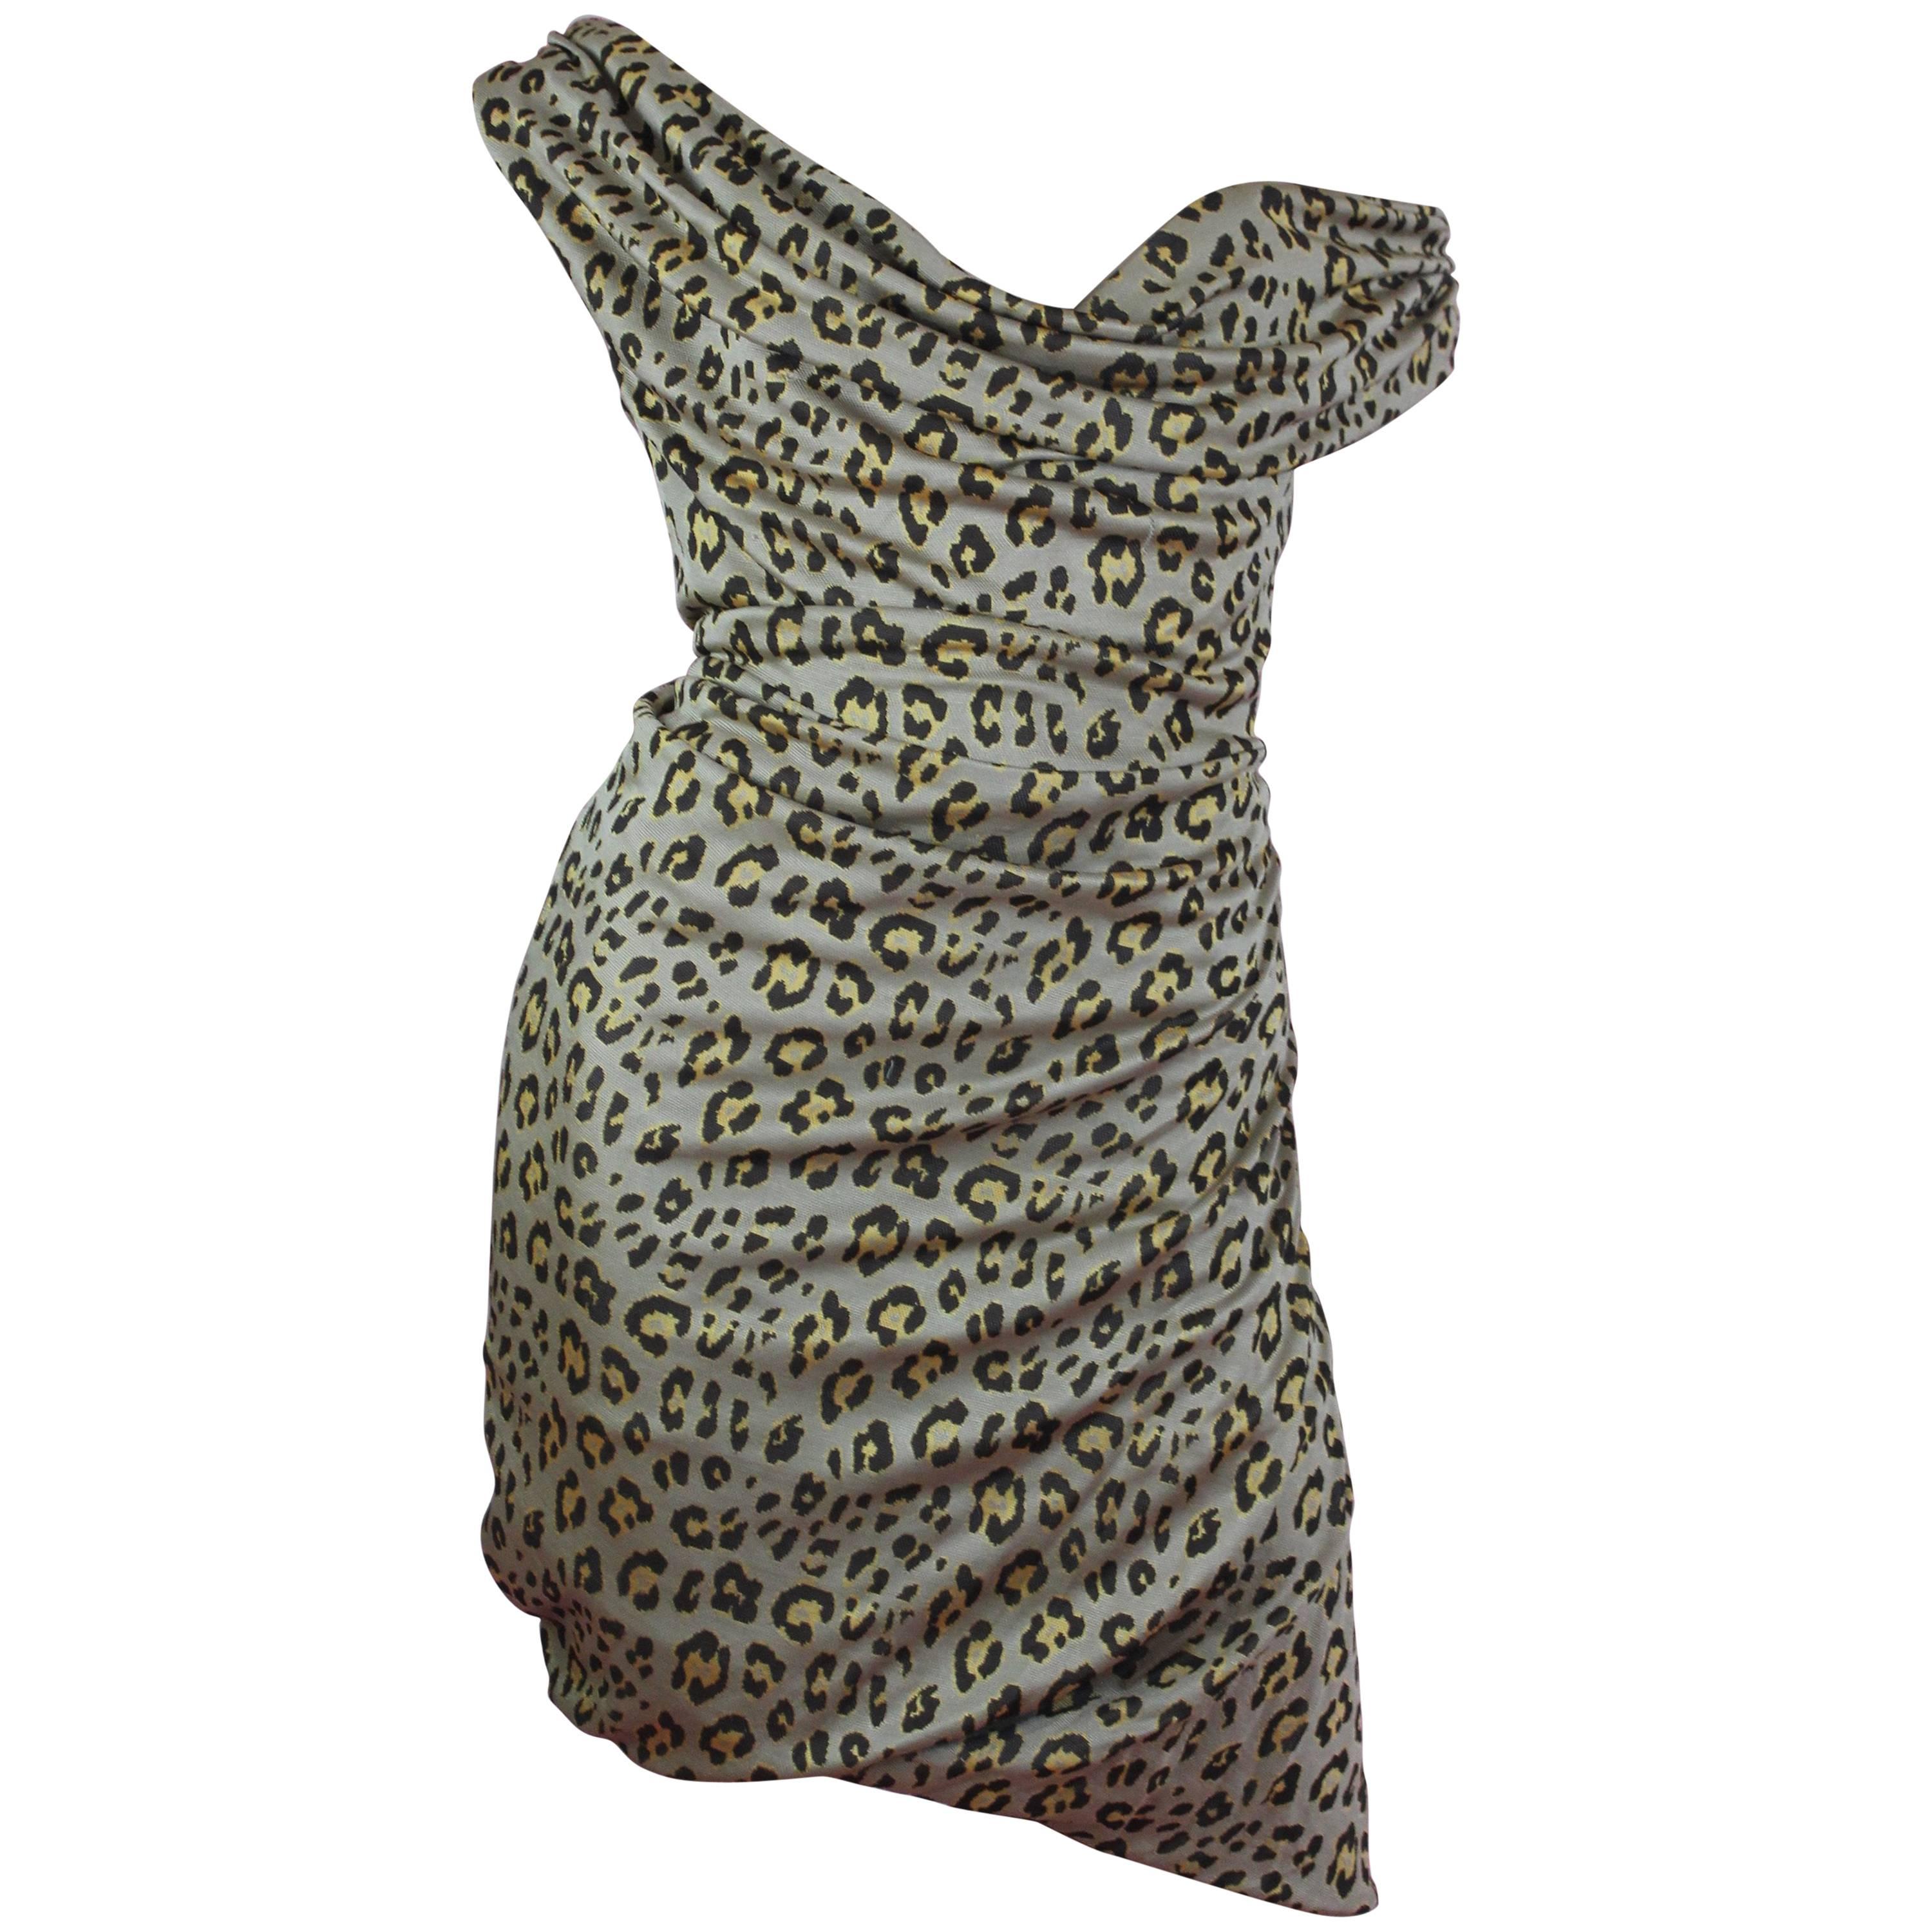 Vivienne Westwood Red Label Leopard Print Cocotte Dress, S / S 2011, Size S 